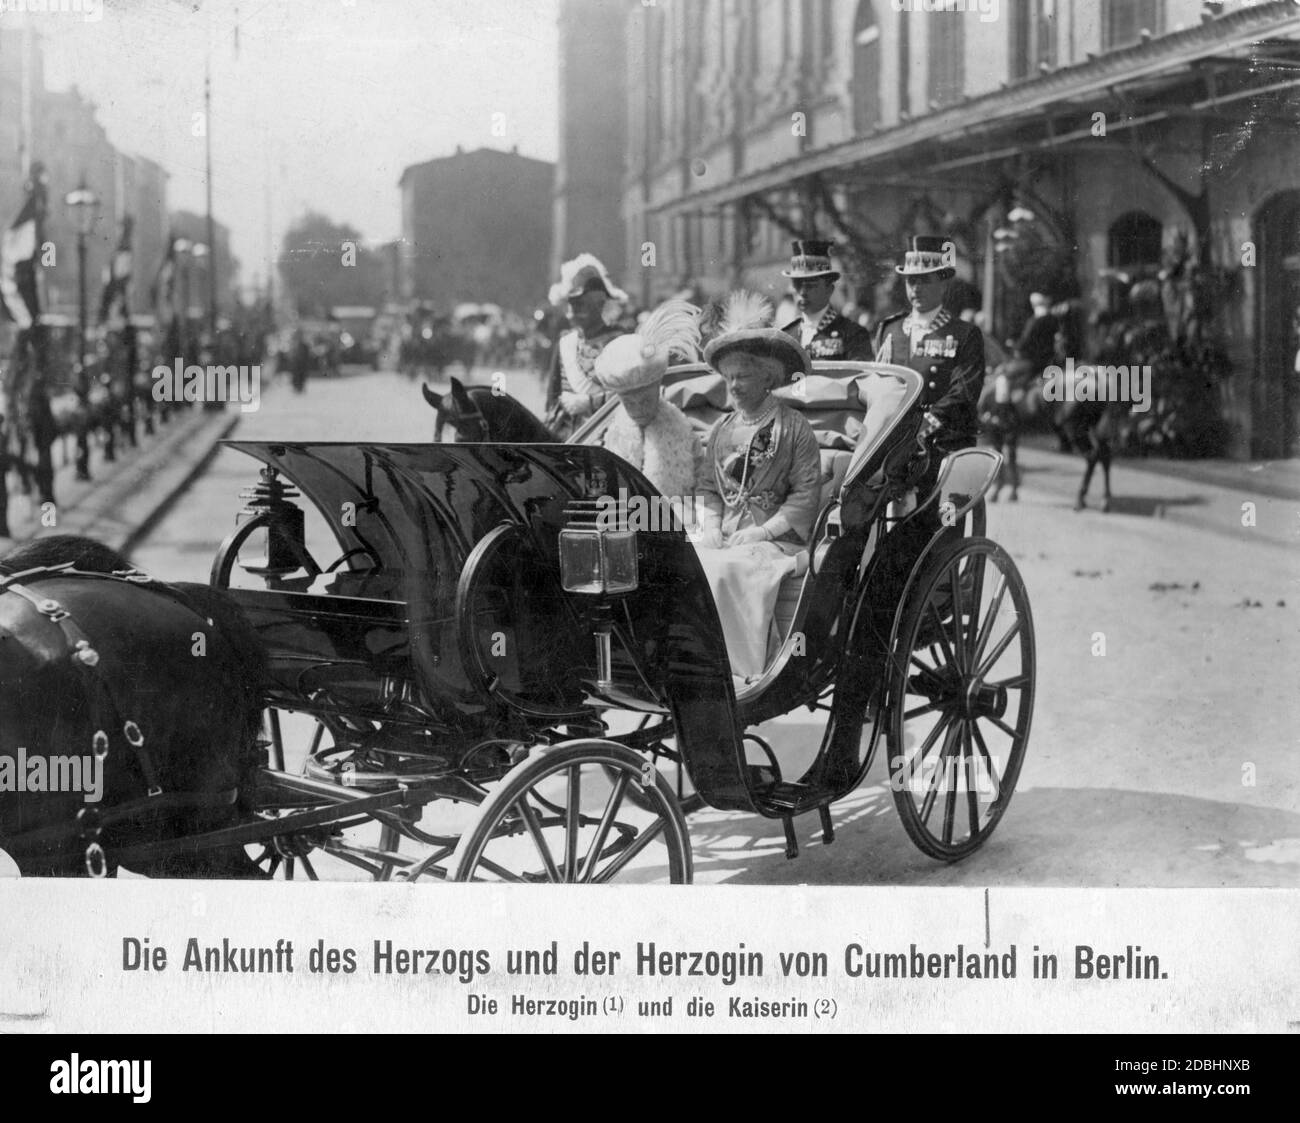 La Duchessa di Cumberland, Thira di Hannover (nee Danimarca, in carrozza a sinistra) e l'imperatrice Augusta Victoria (a destra) attraversano Berlino insieme. Foto non datata, scattata intorno al 1910. Foto Stock